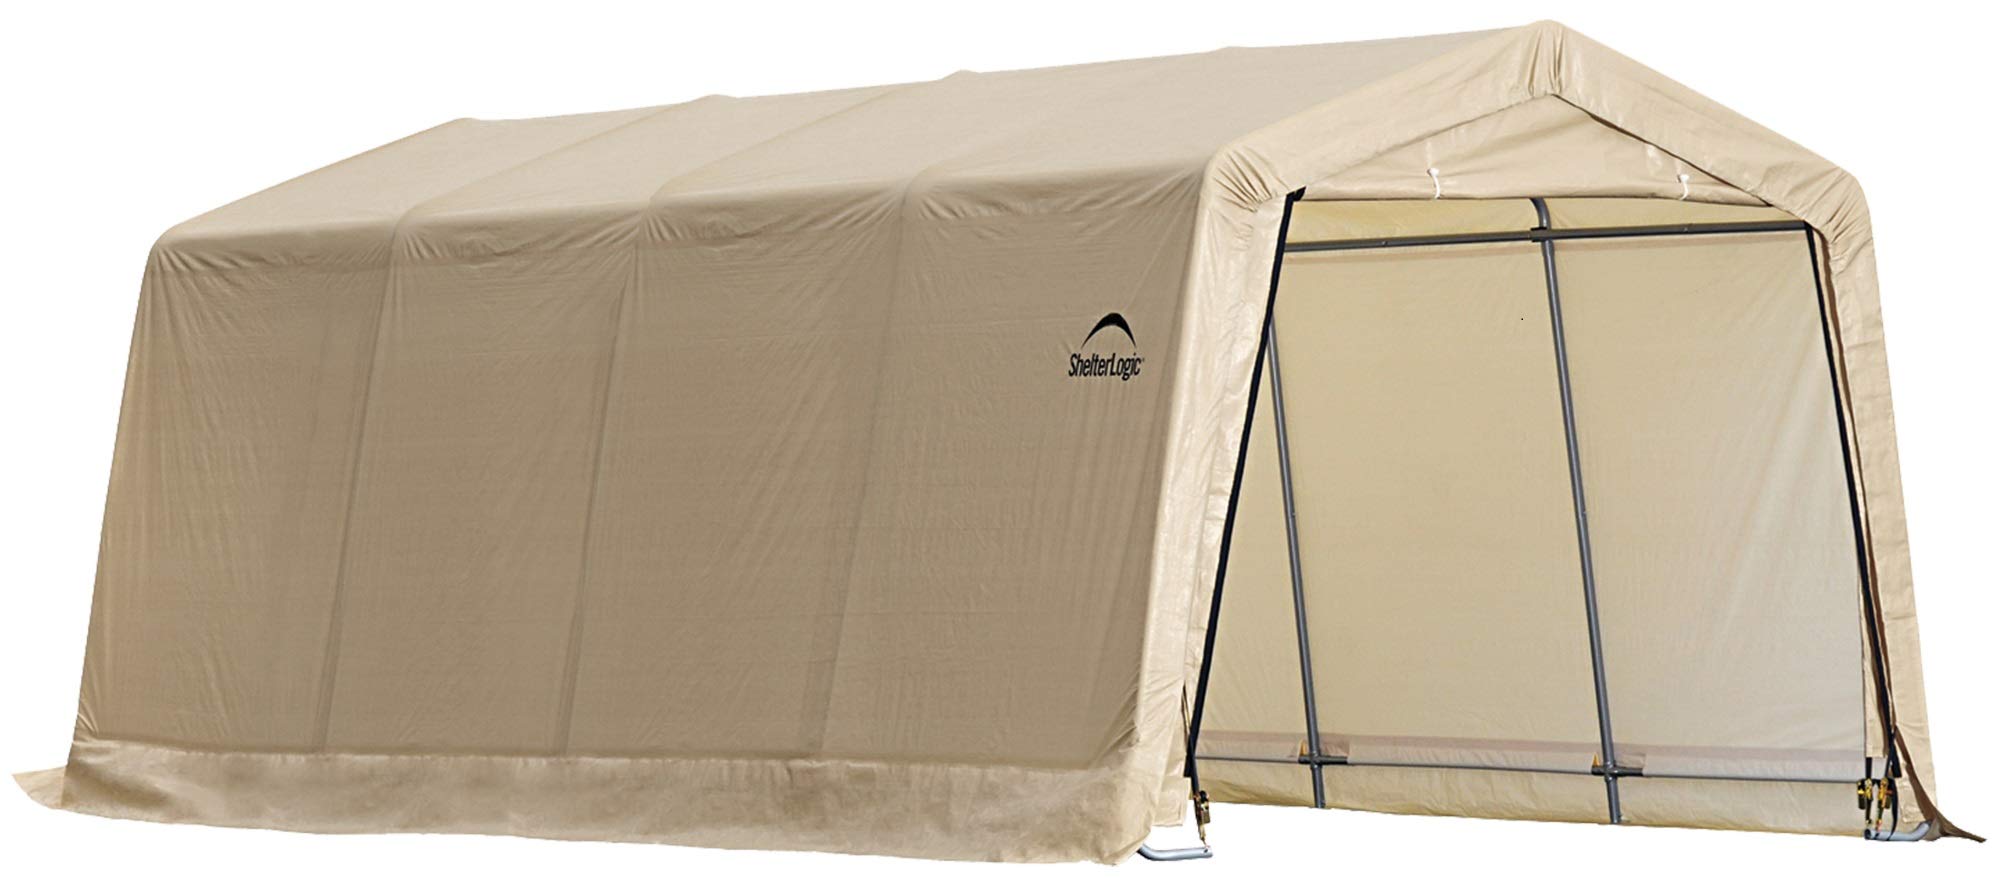 Carport Canopy Shelter Tent Auto Garage Truck Boat Enclosure 10x20X8